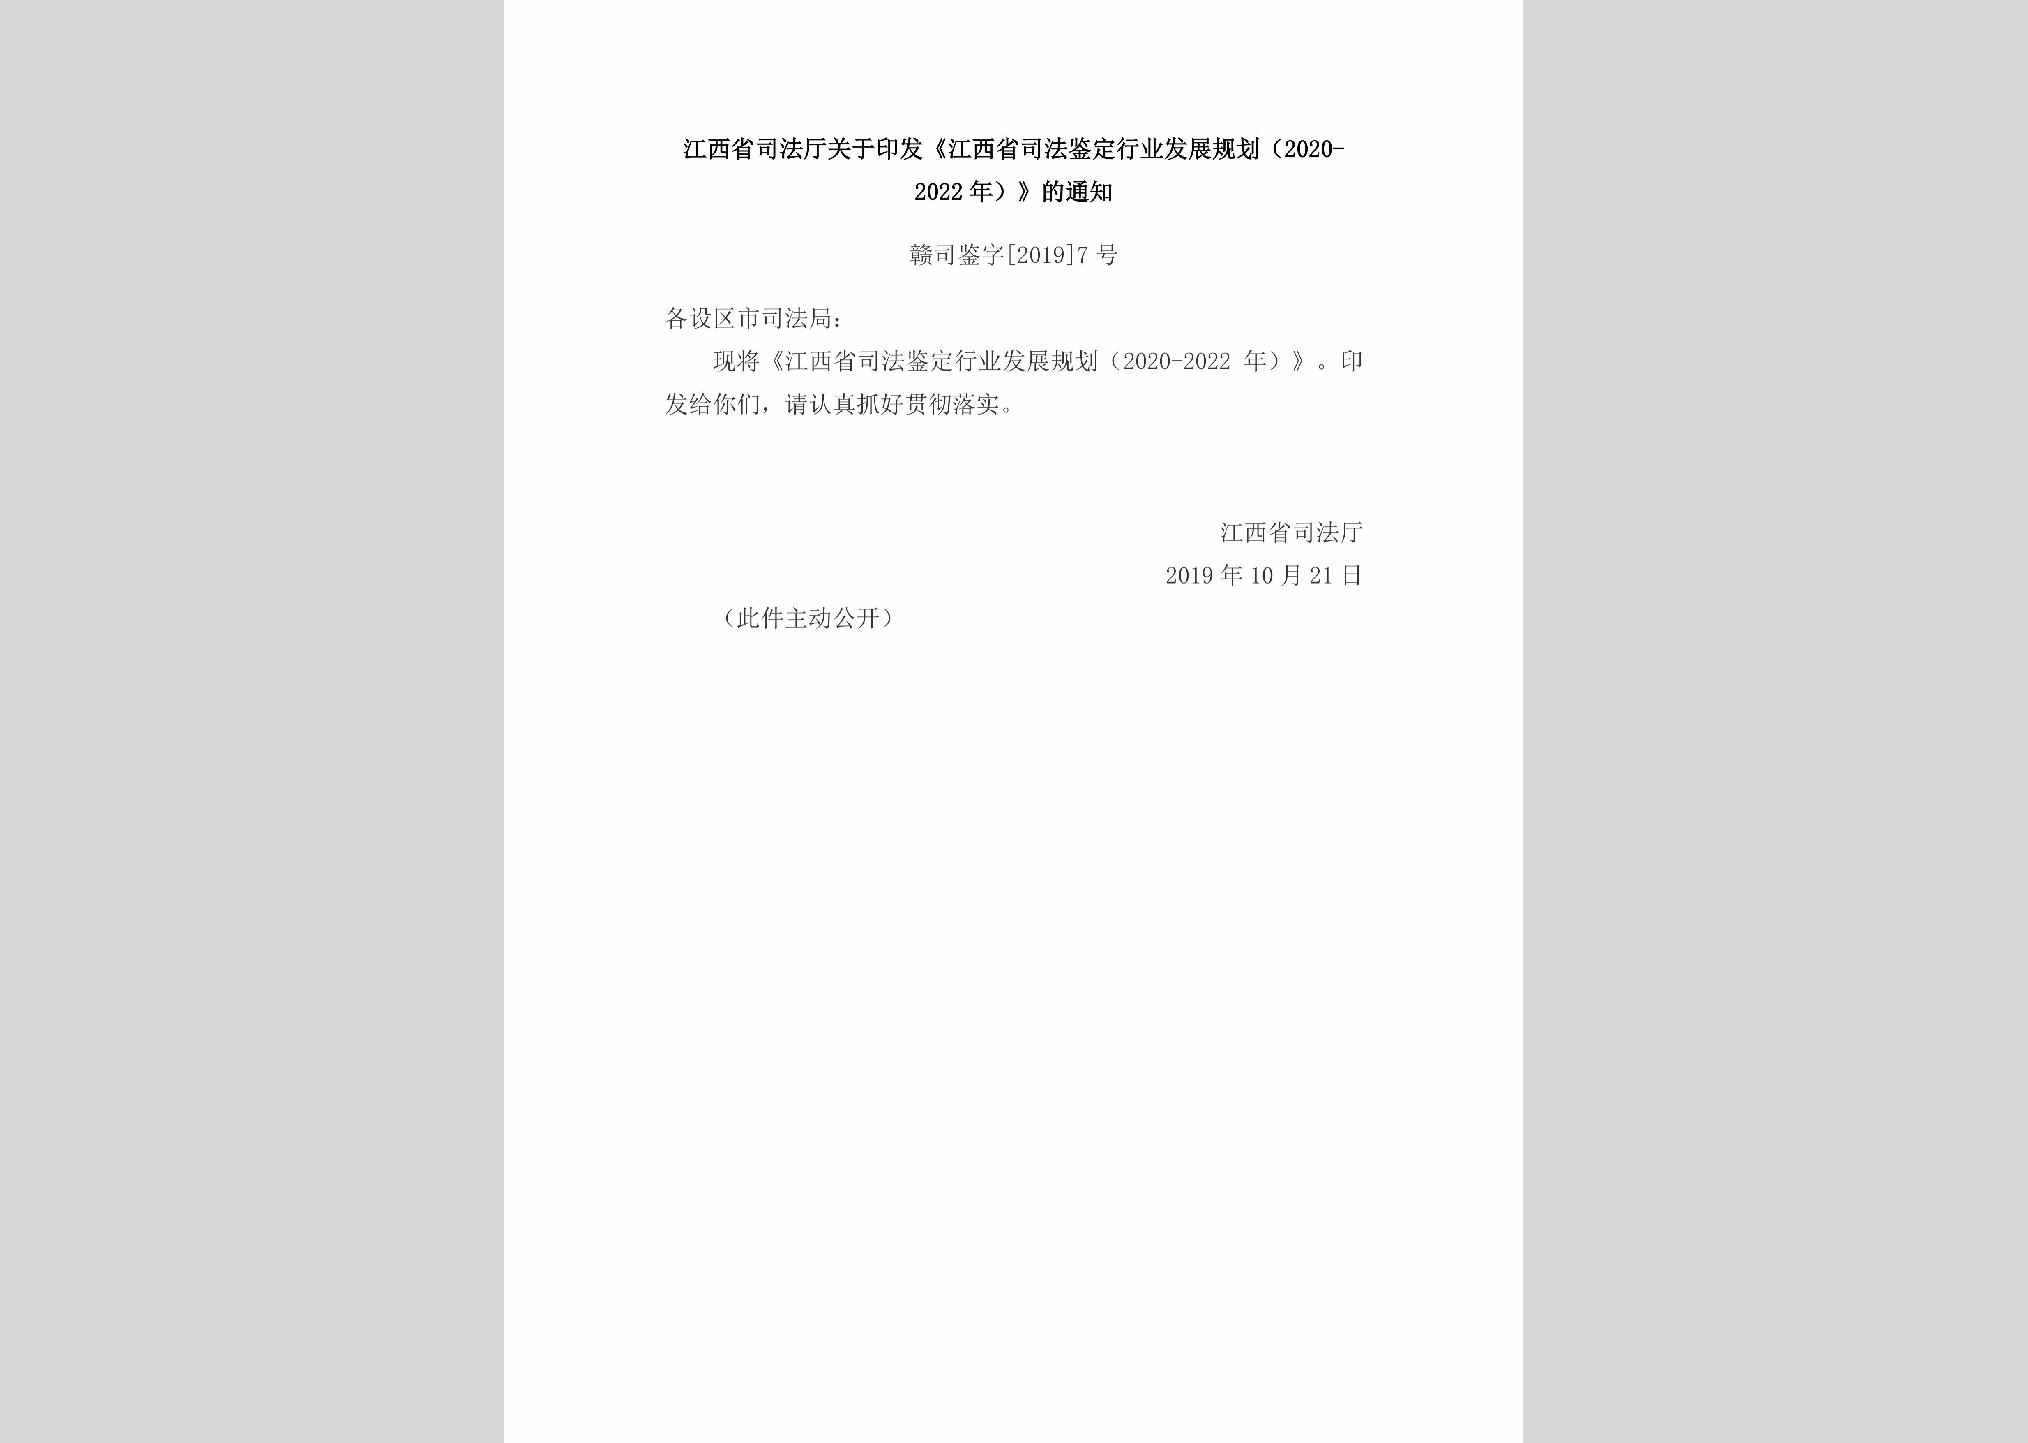 赣司鉴字[2019]7号：江西省司法厅关于印发《江西省司法鉴定行业发展规划（2020-2022年）》的通知